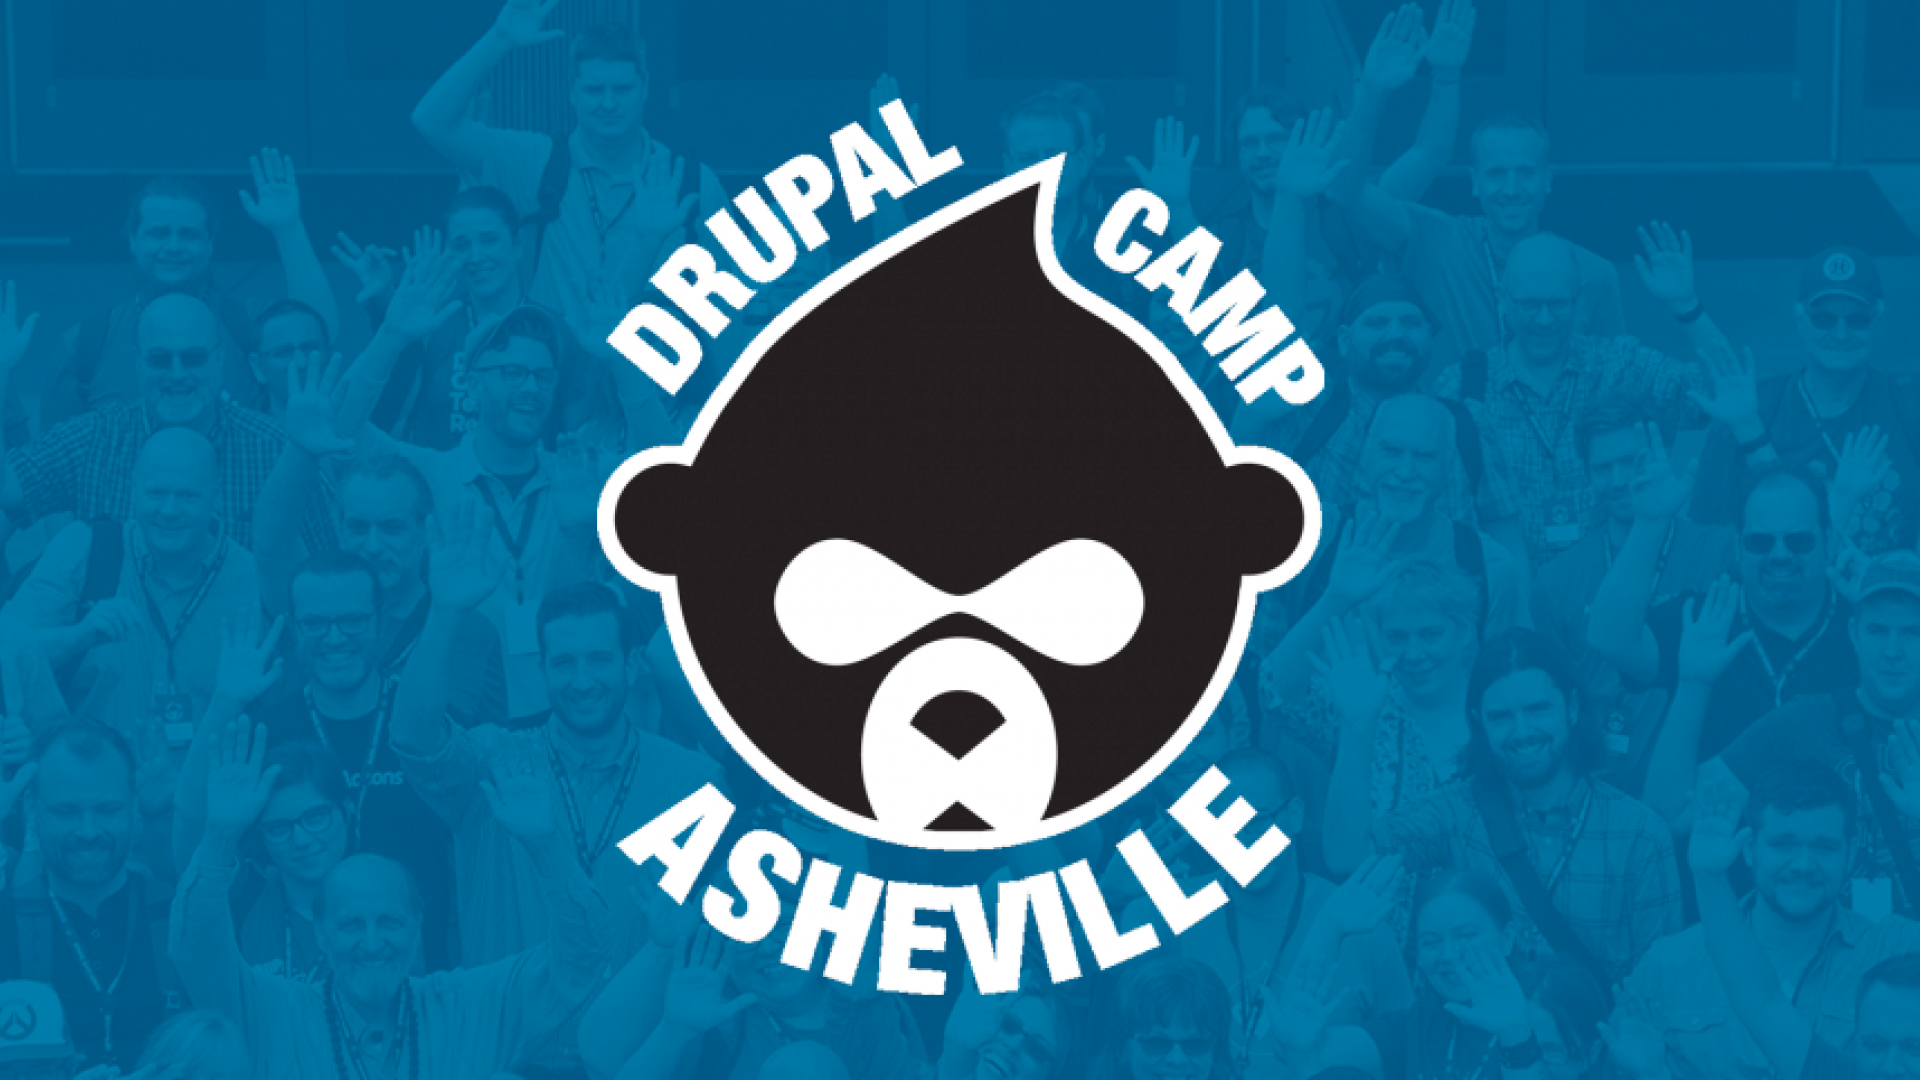 Drupal Camp Ashville